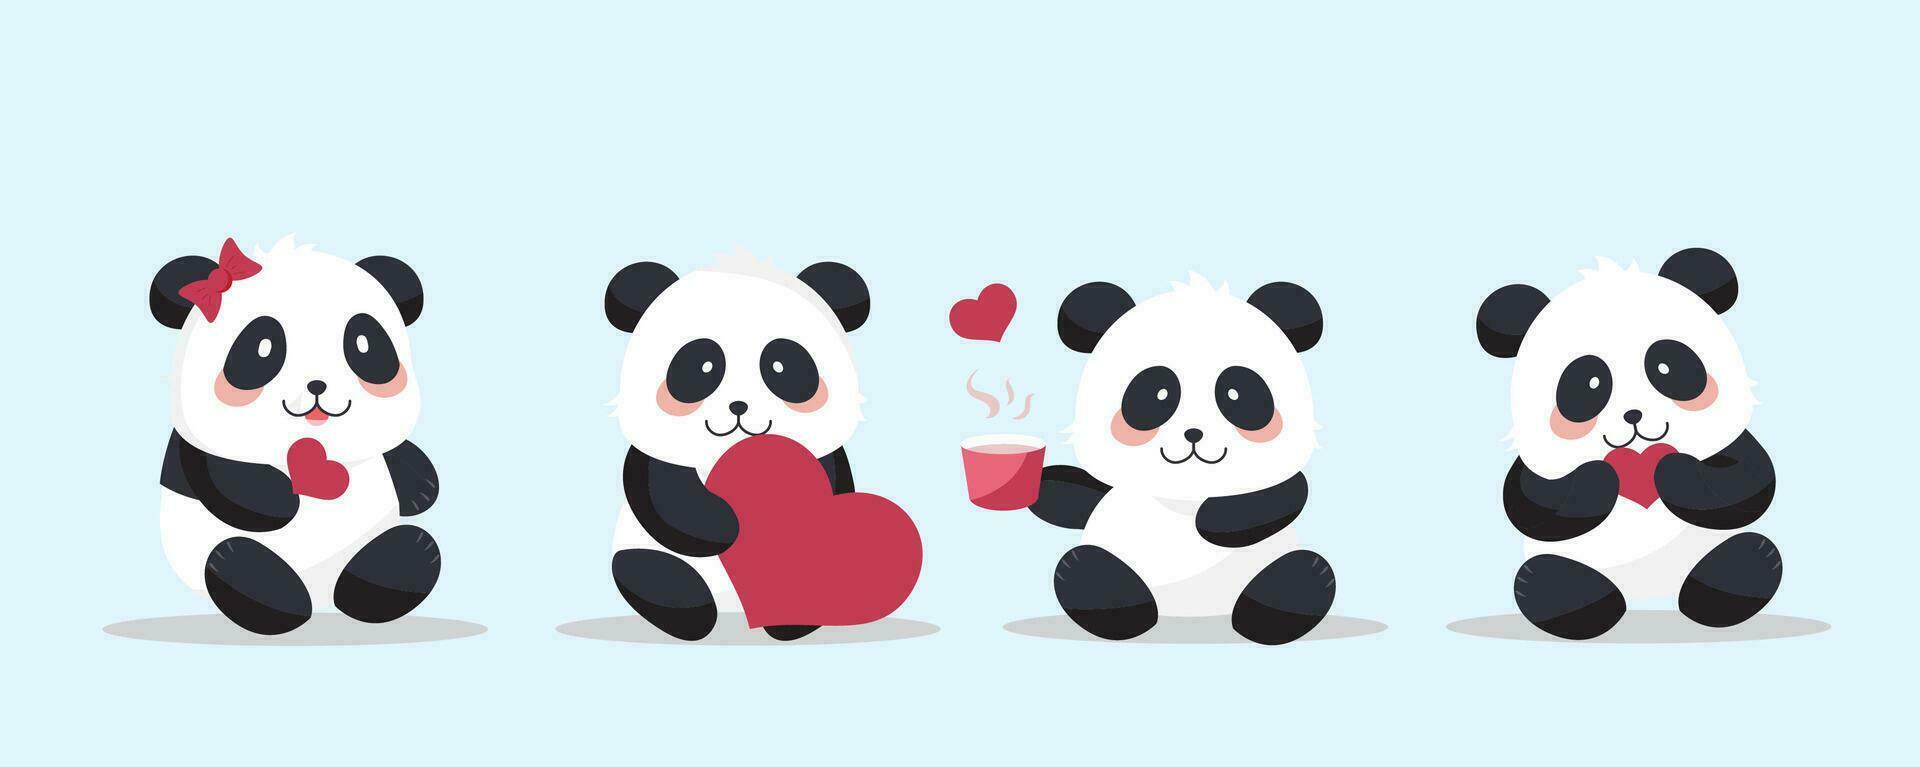 söt panda objekt uppsättning med hjärta för hjärtans dag.illustration vektor för vykort, ikon, klistermärke